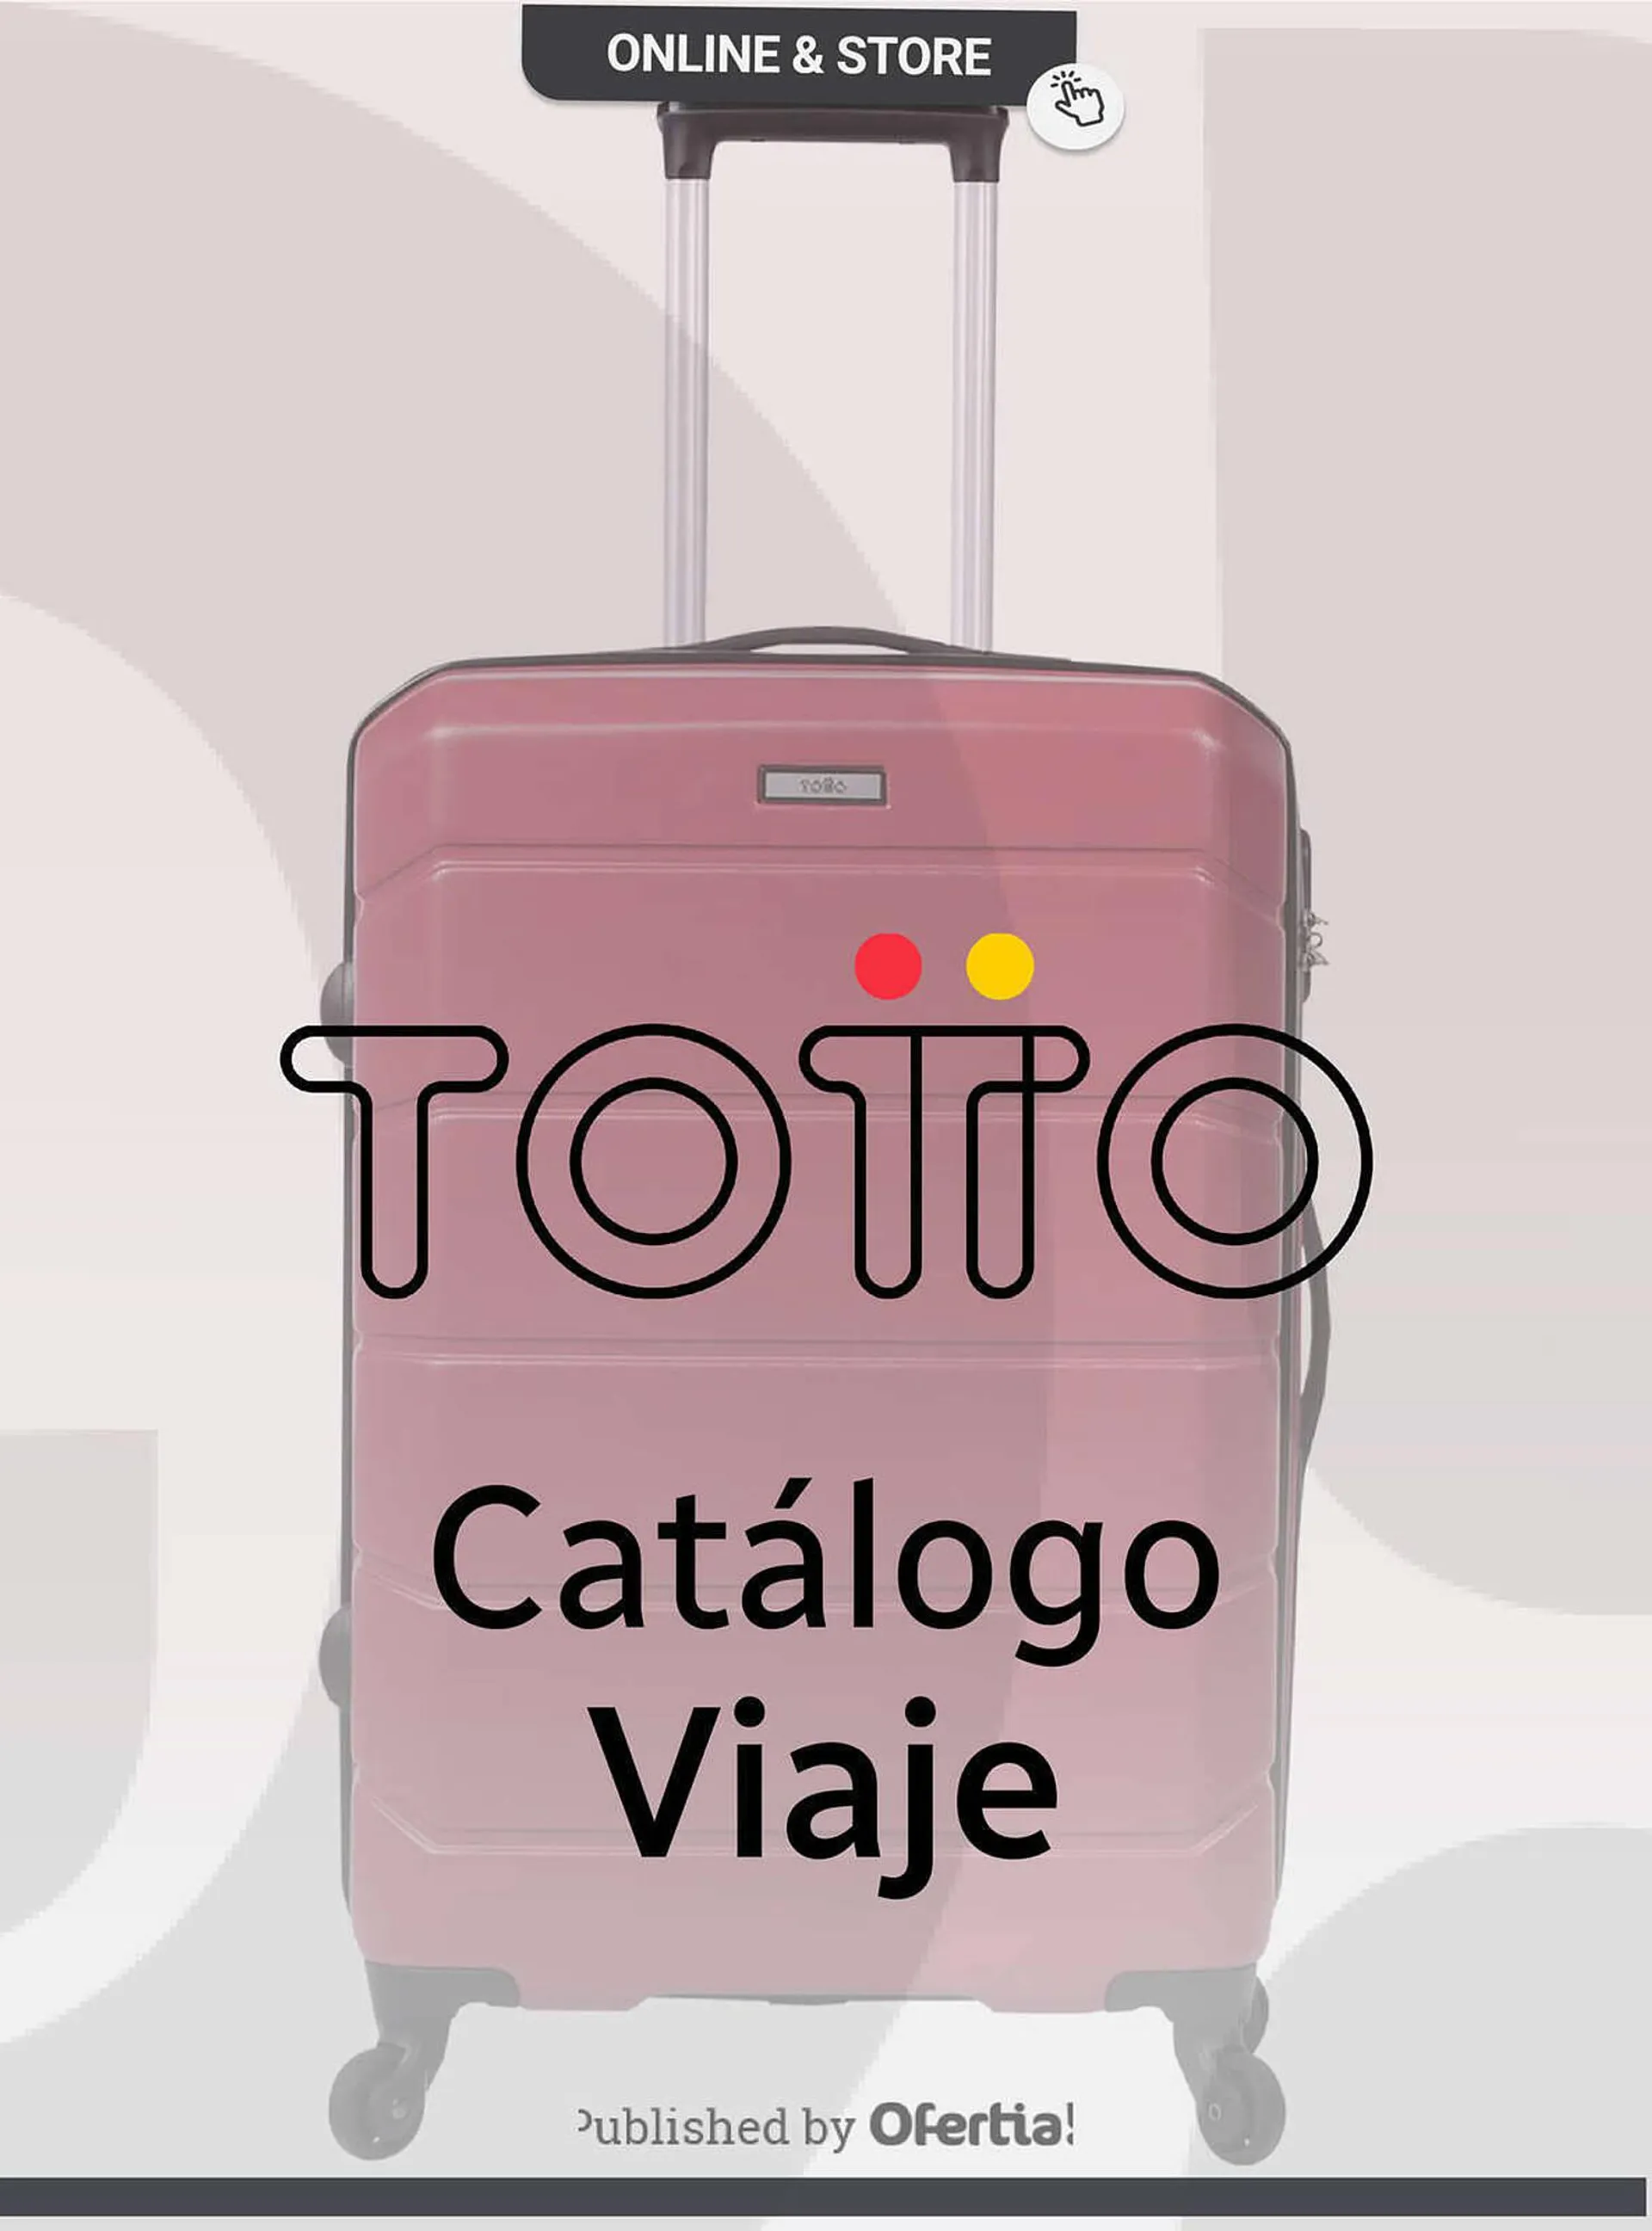 Catálogo Totto